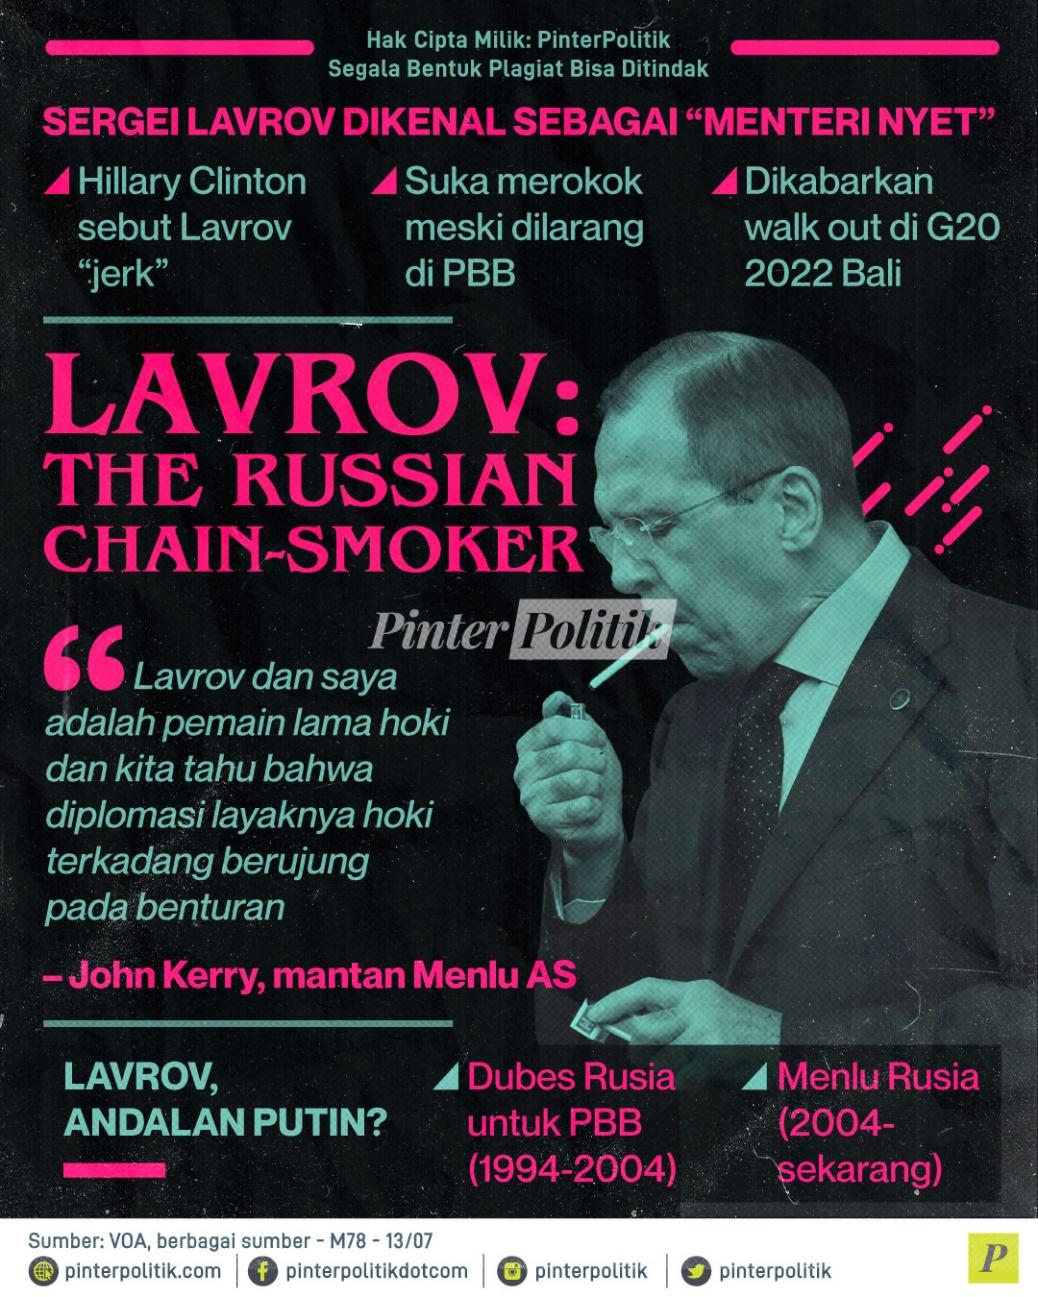 Lavrov Menlu Rusia The Russian Chain-smoker